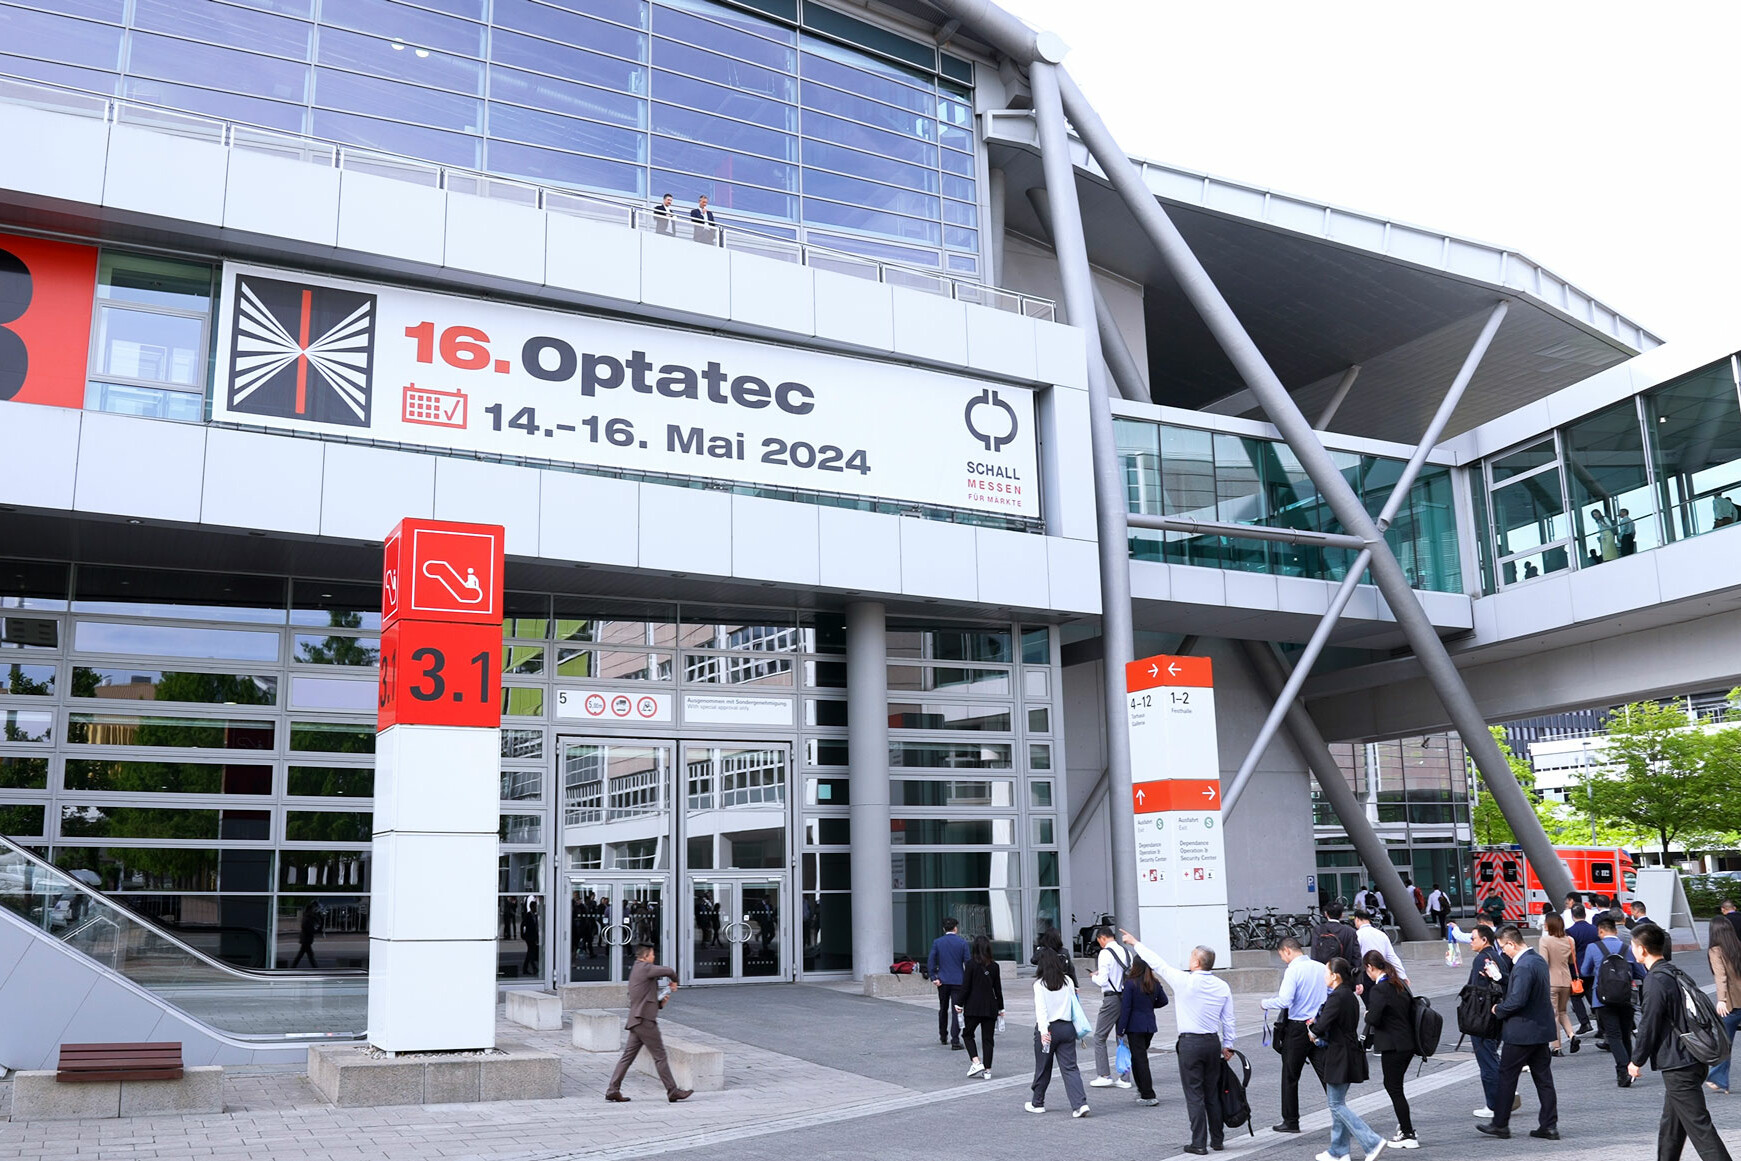 Optatec Internationale Fachmesse für optische Technologien, Komponenten und Systeme Optatec 2024 001 uai